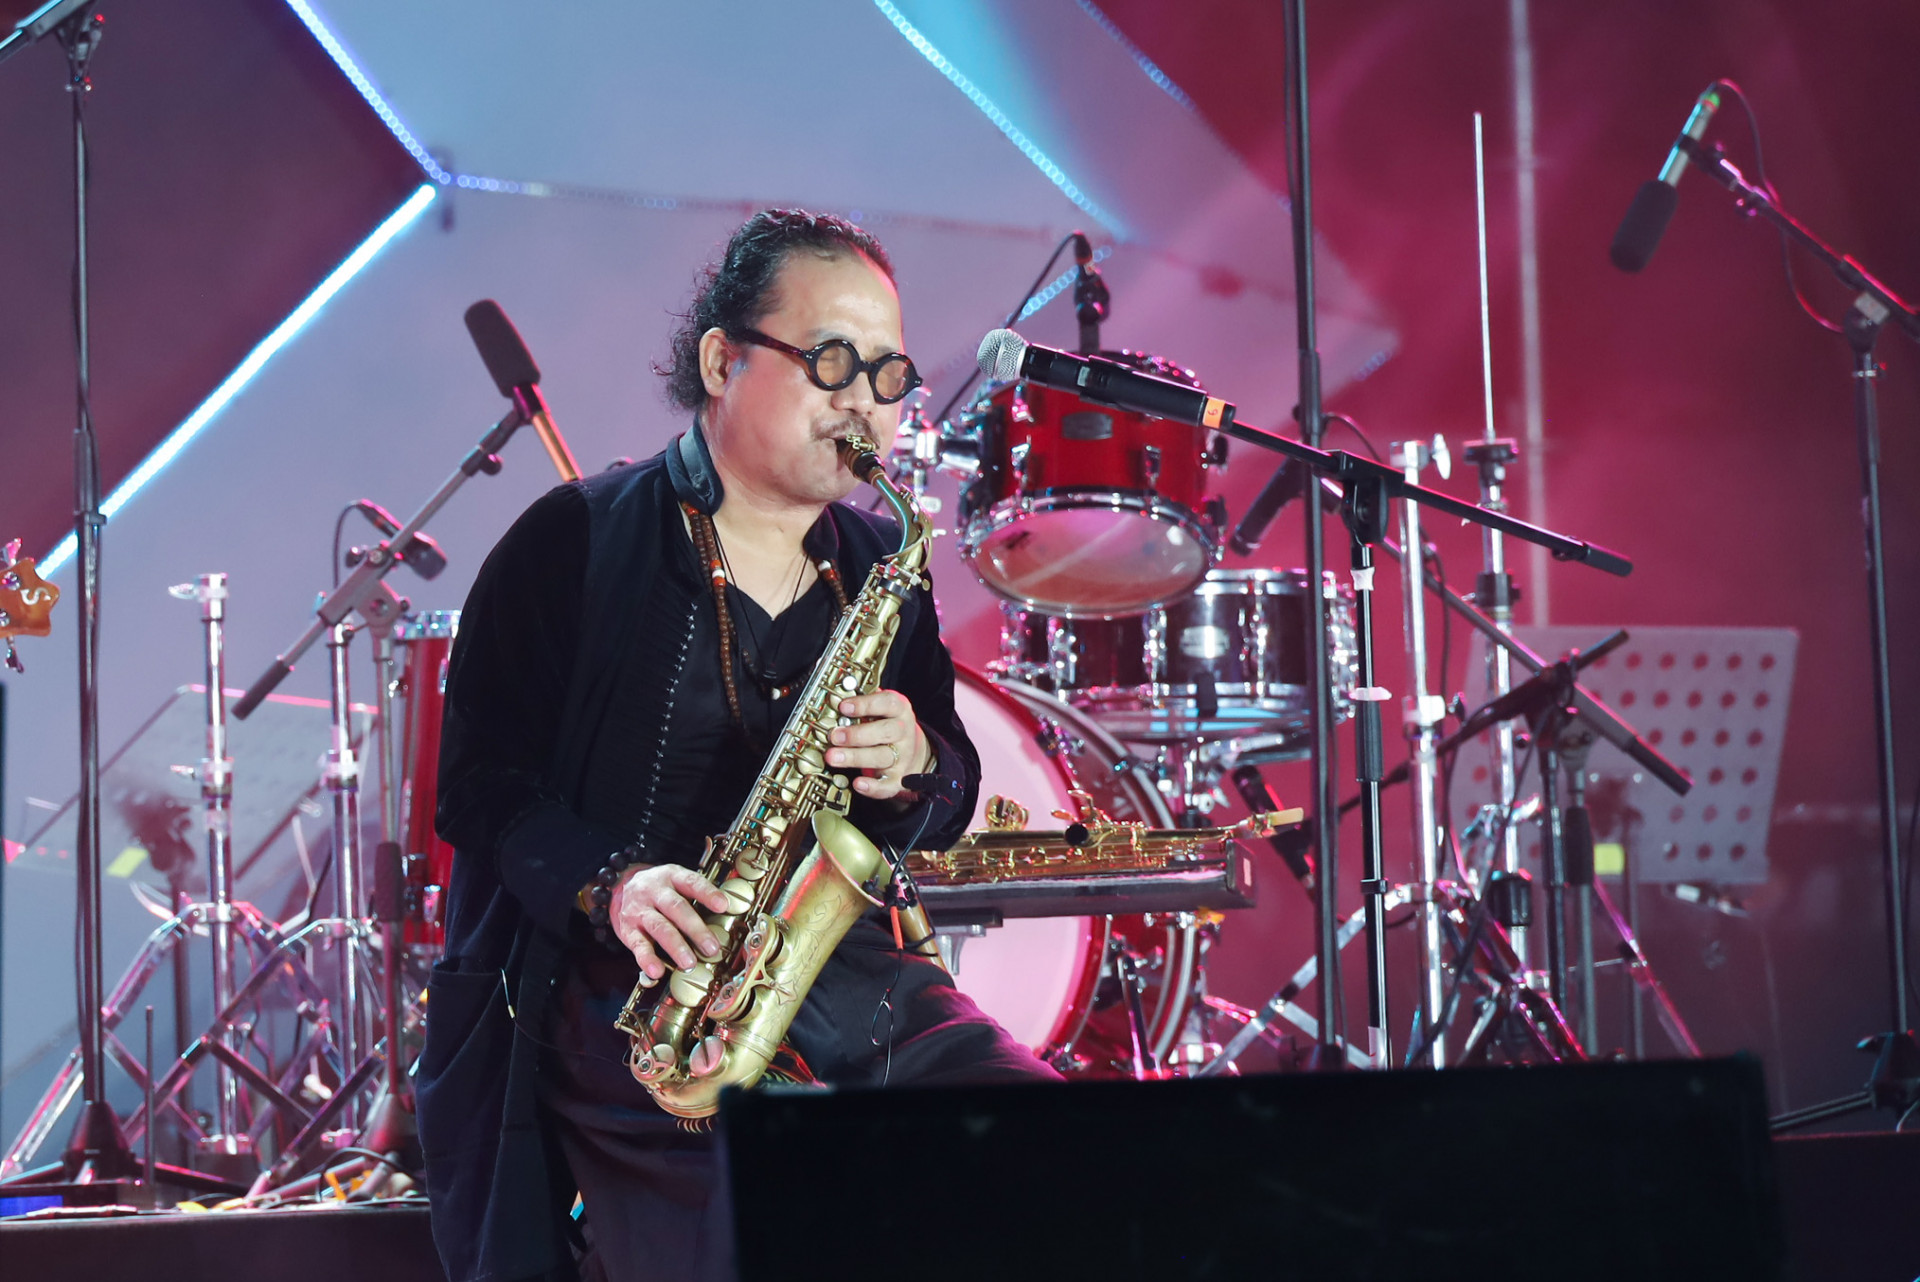 Nghệ sĩ Trần Mạnh Tuấn phiêu cùng tiếng kèn Saxophone gửi tới khán giả nhạc phẩm Bướm mơ.